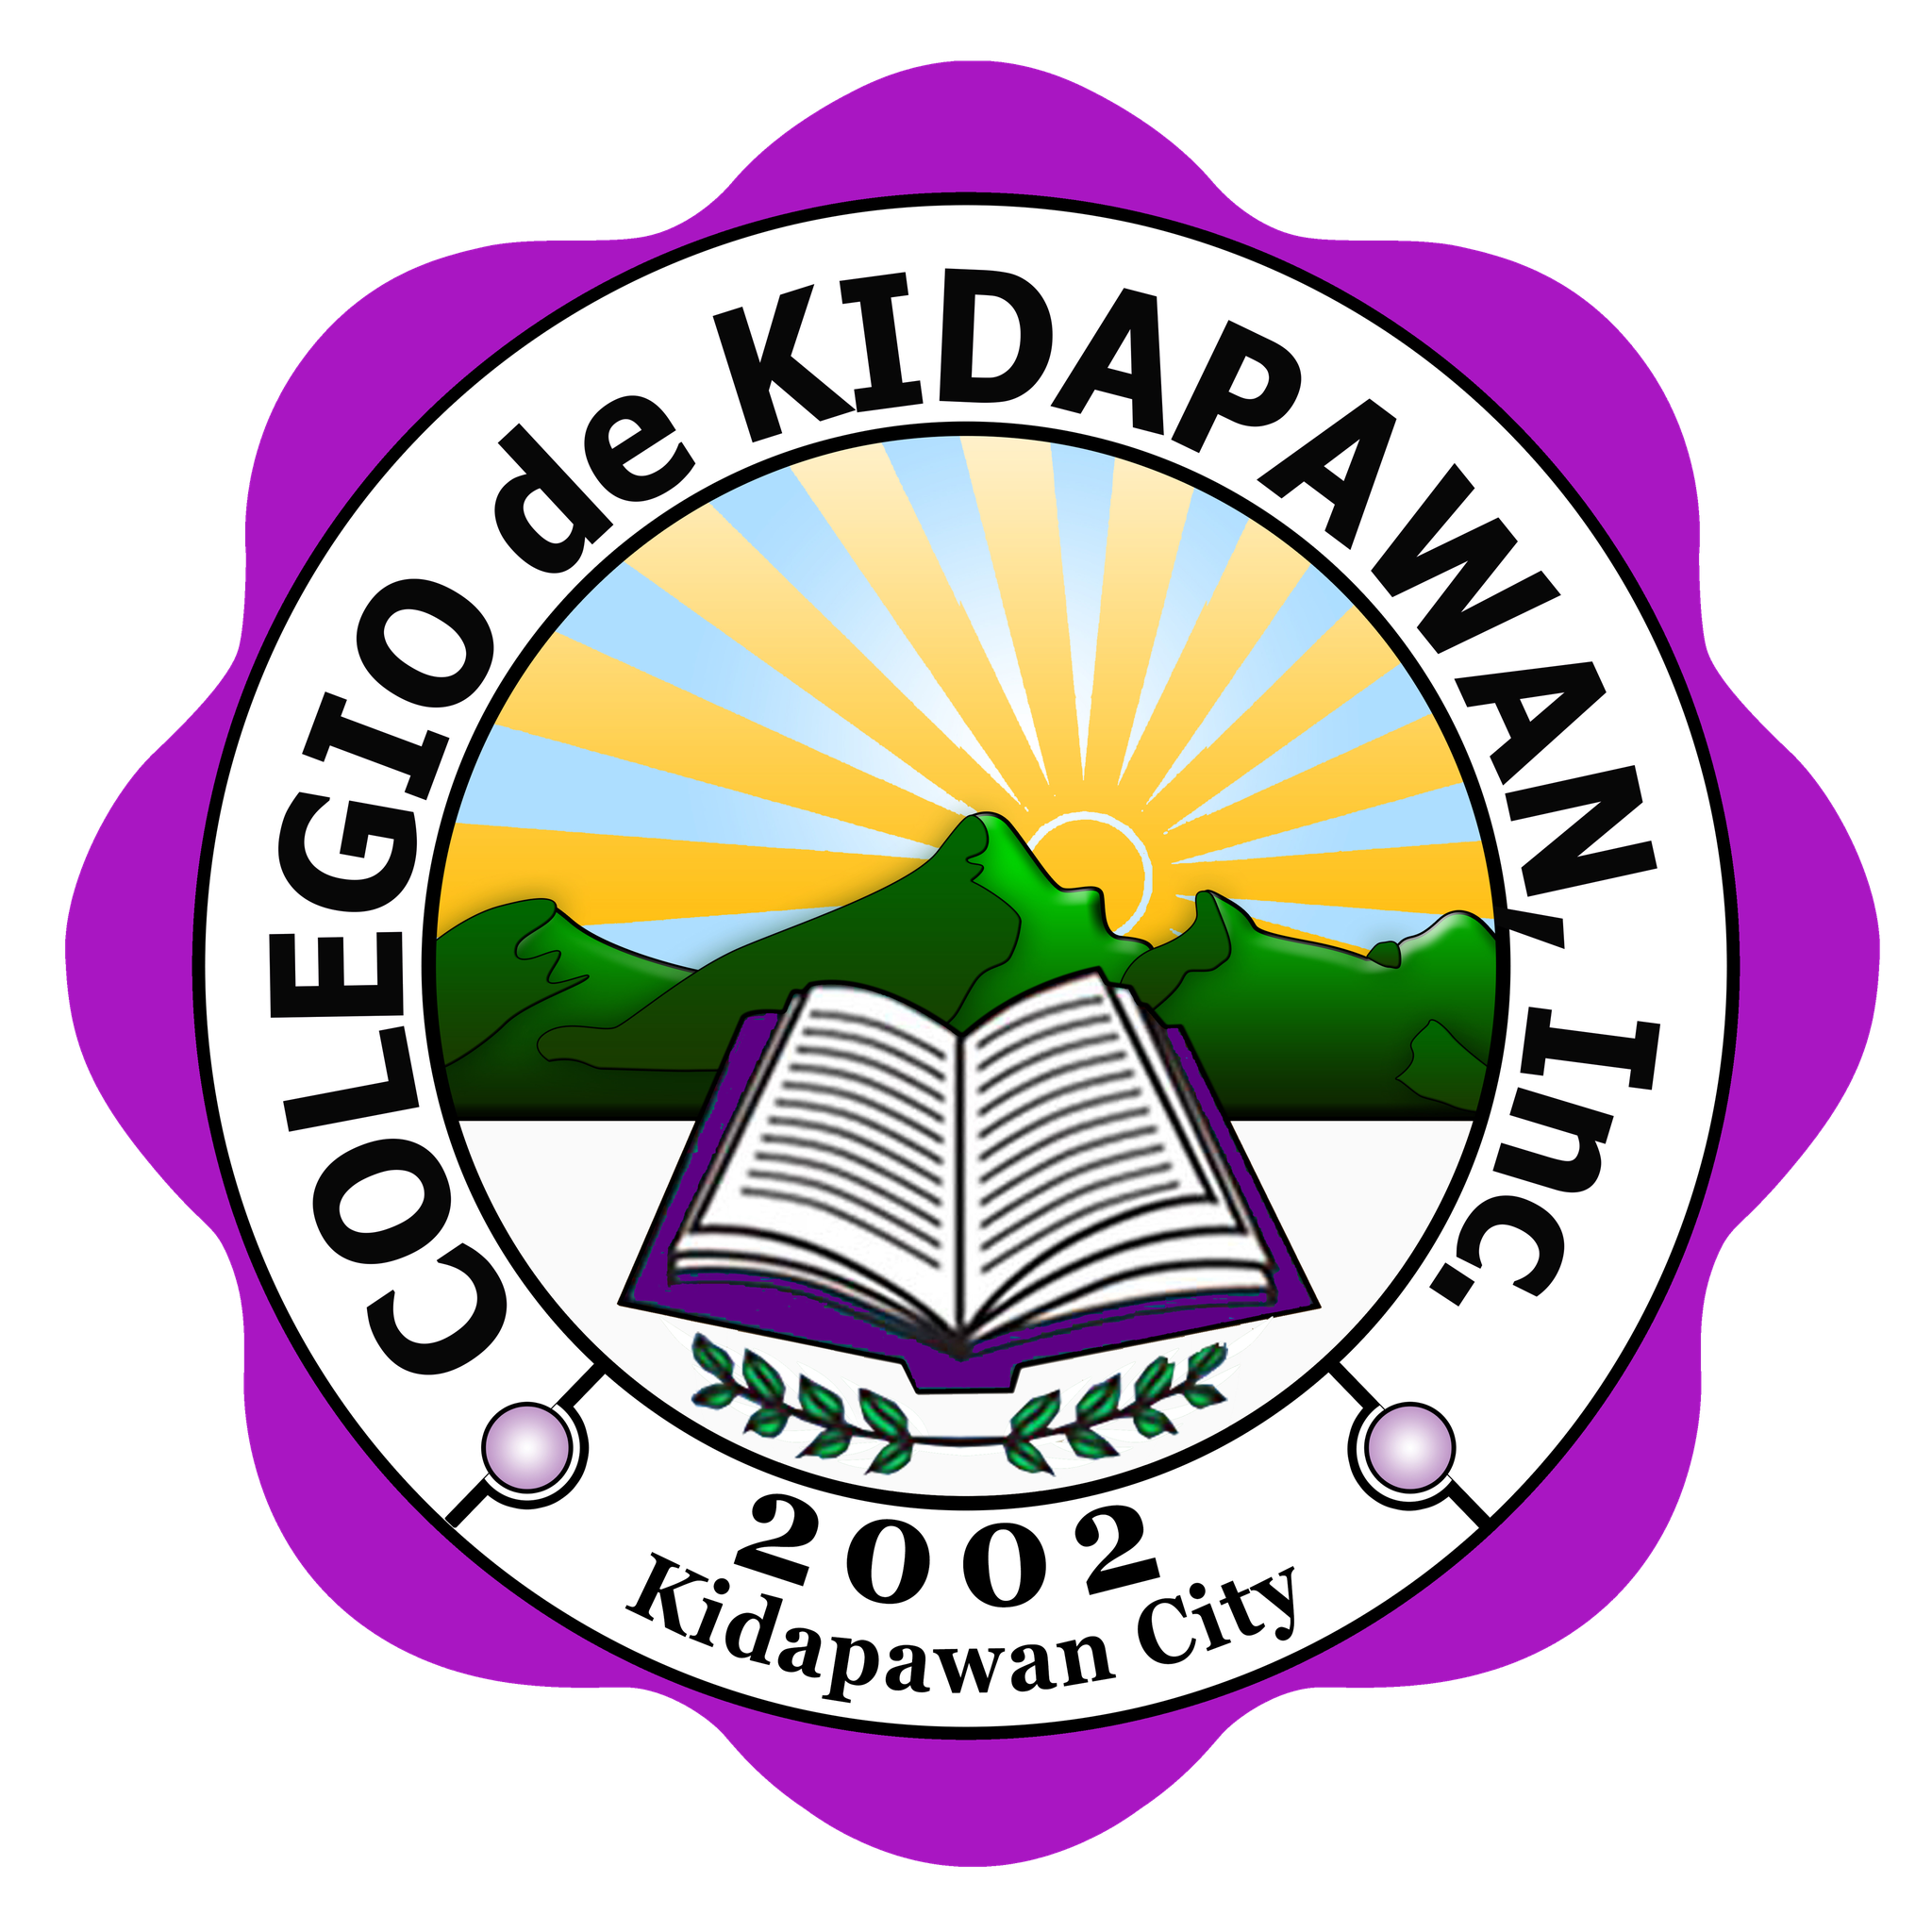 Colegio de Kidapawan logo